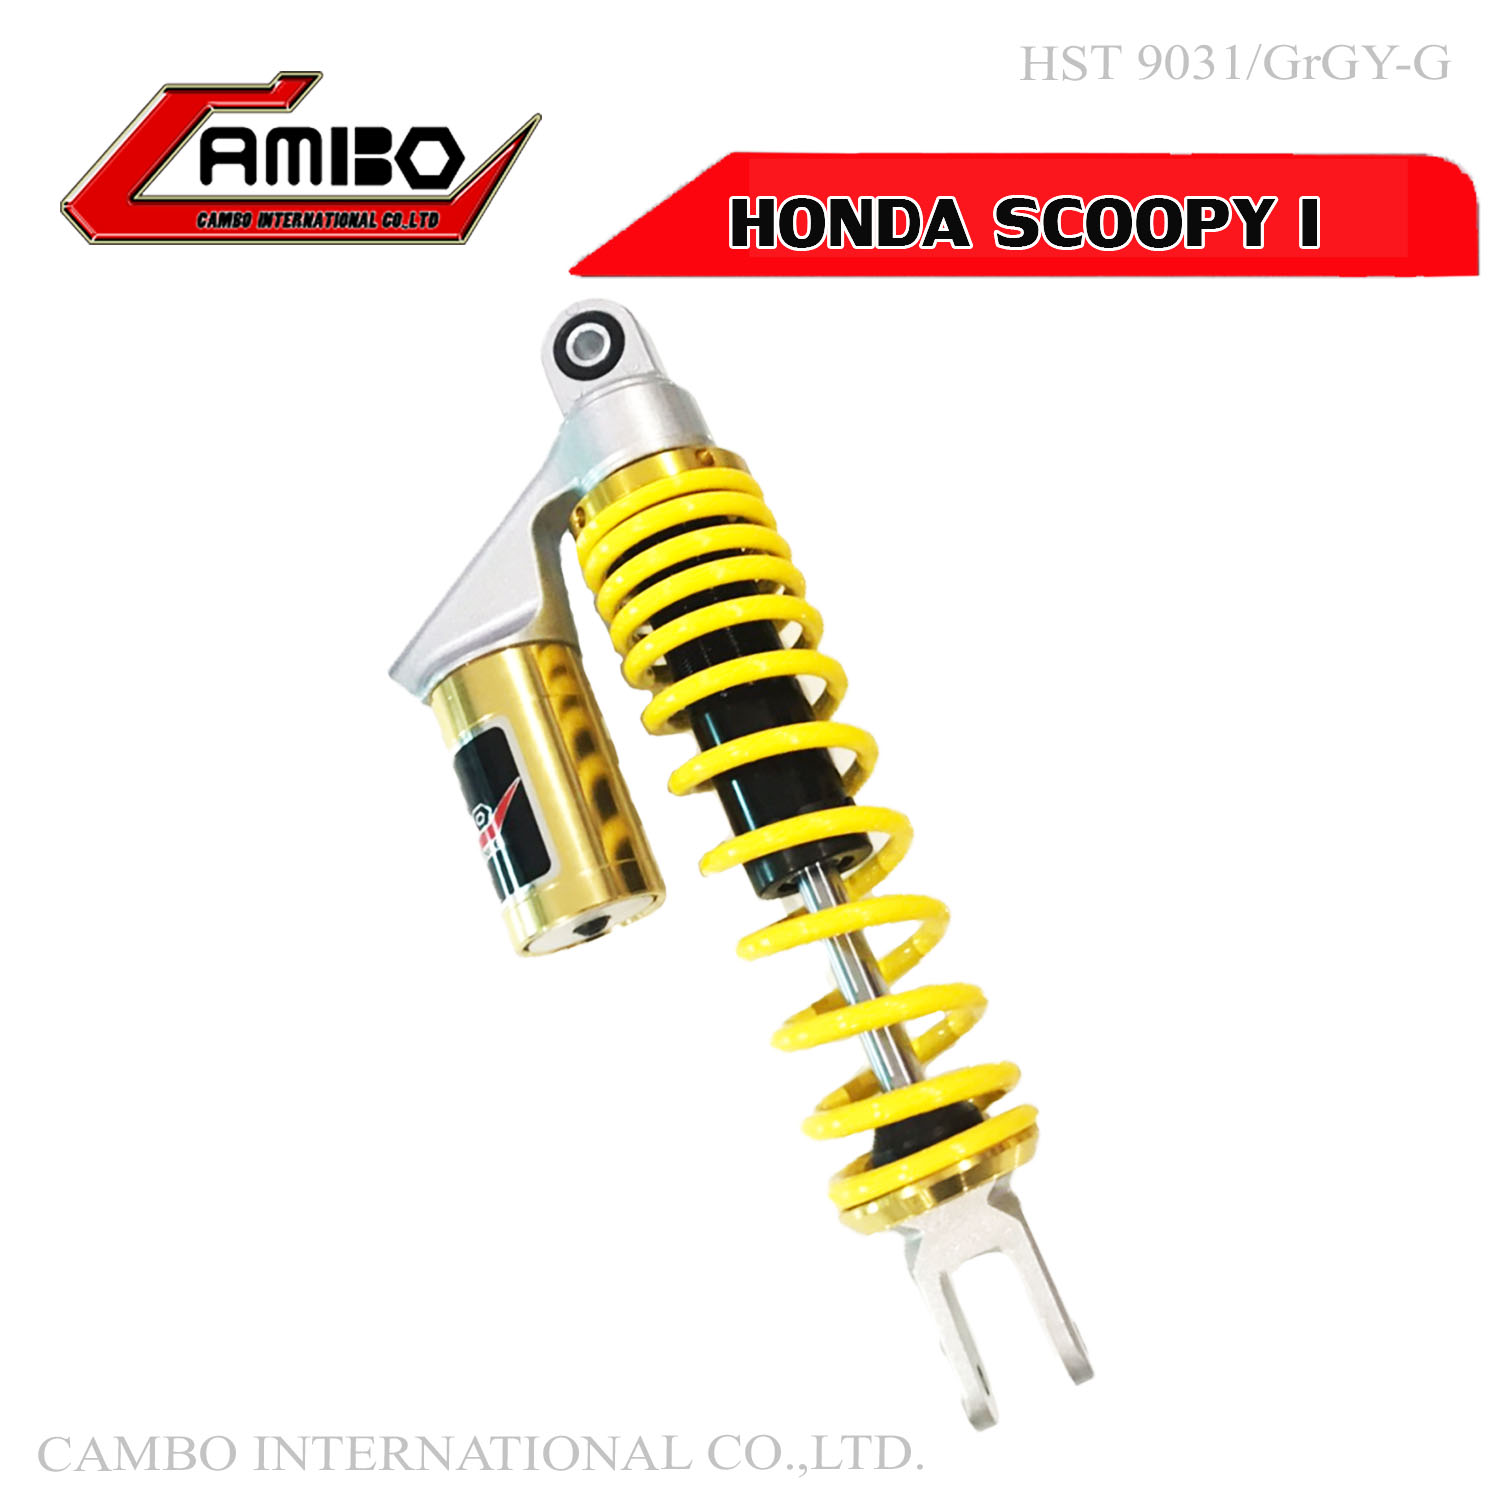 โช๊คหลัง YAMAHA FINO 115 125 ระบบแก๊ส มีกระบอกซับแทงค์ ยาว 300 มิล สีเหลืองทอง (HST 9101/GrSiY-G)